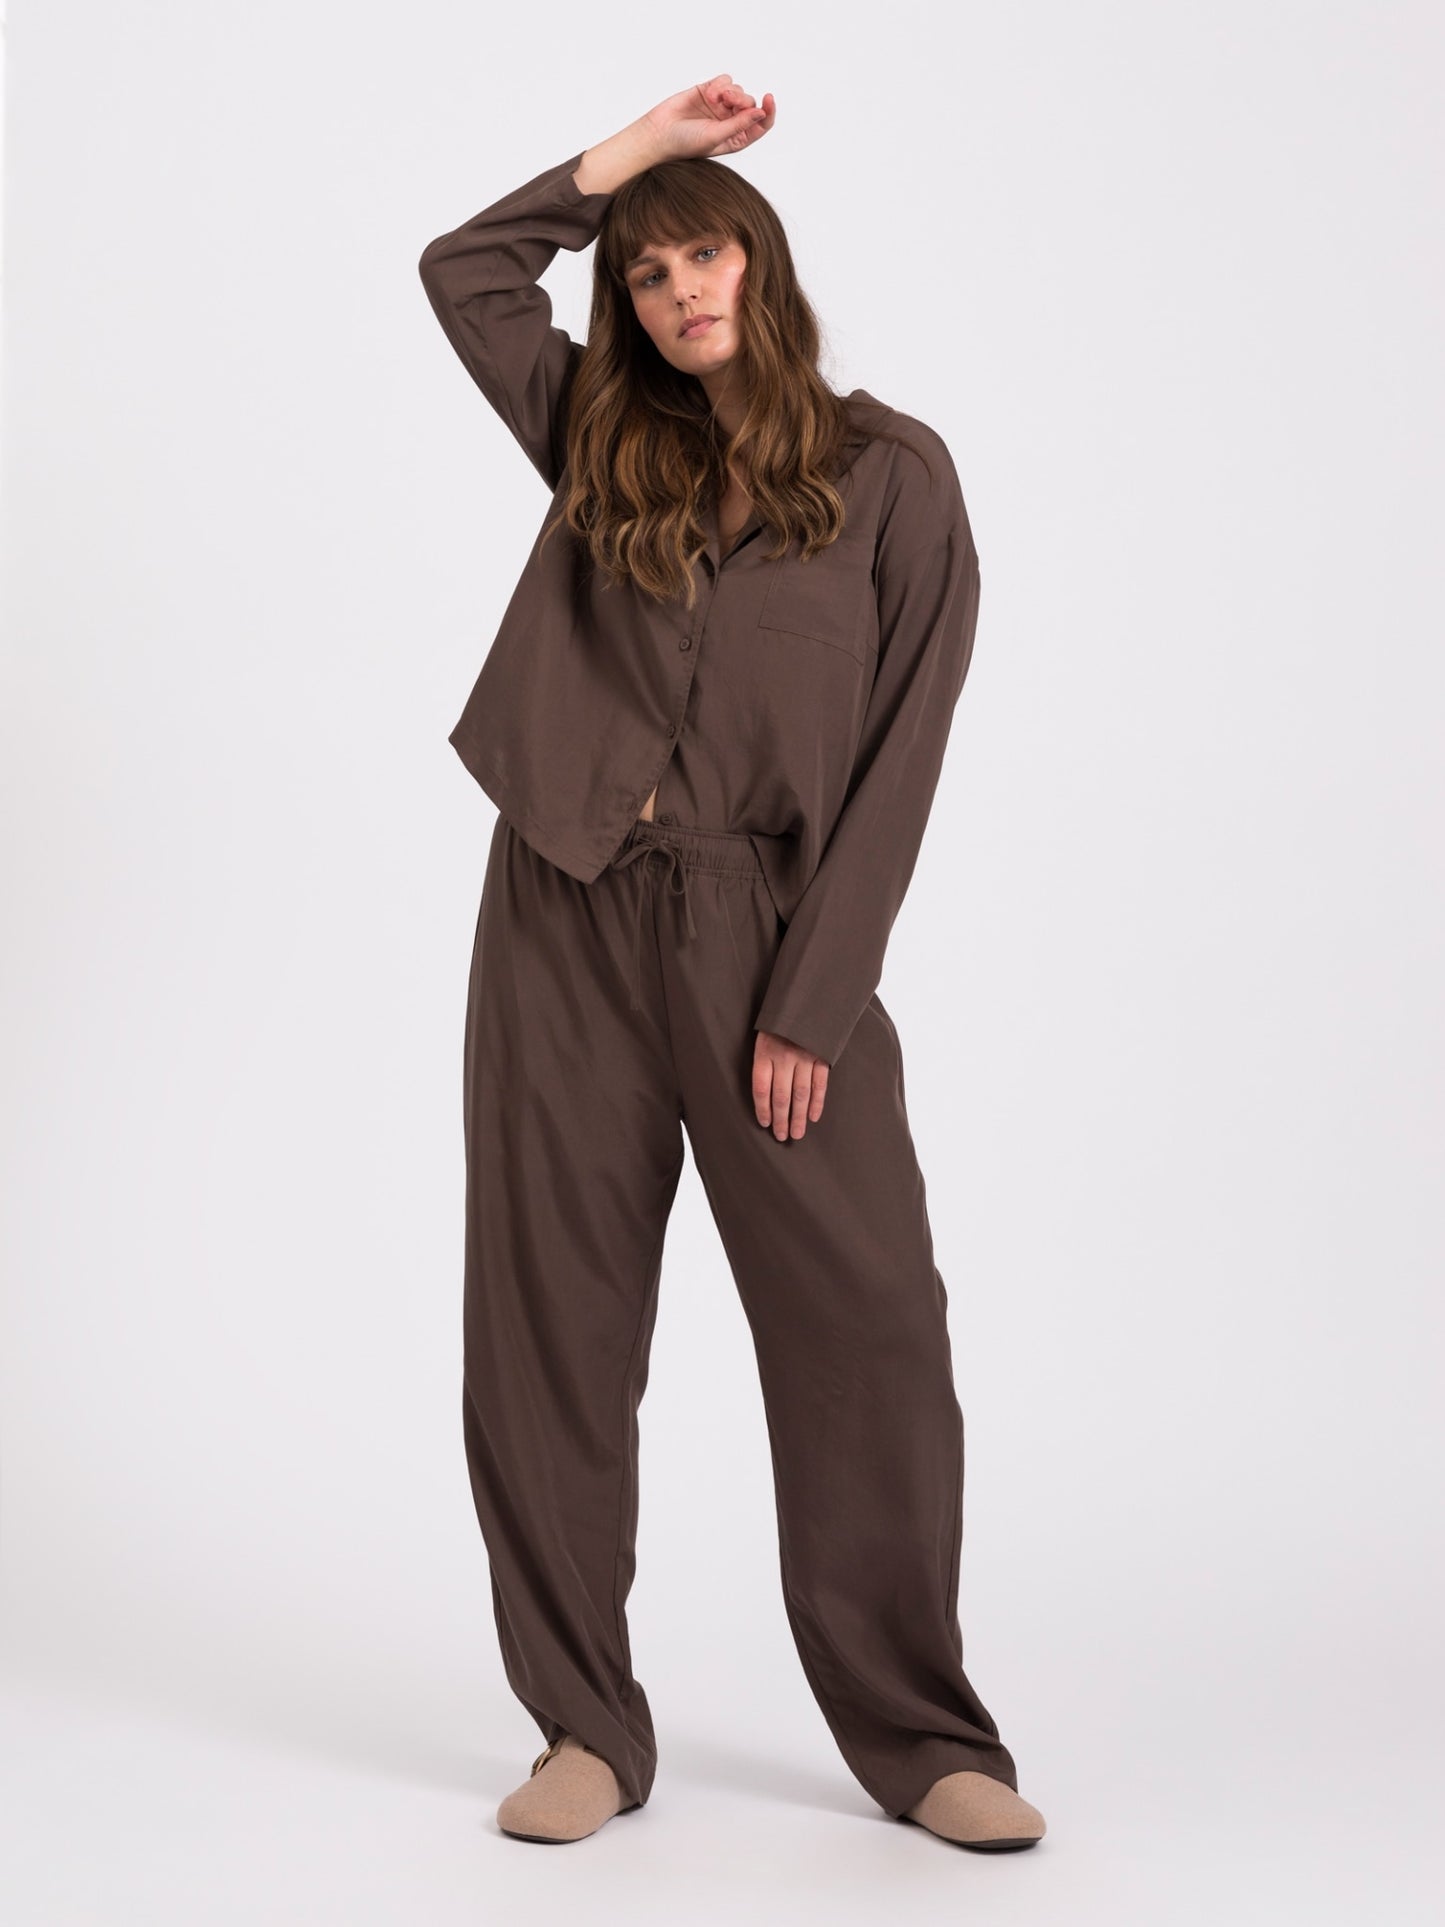 Snuggle pajama shirt - Chocolate